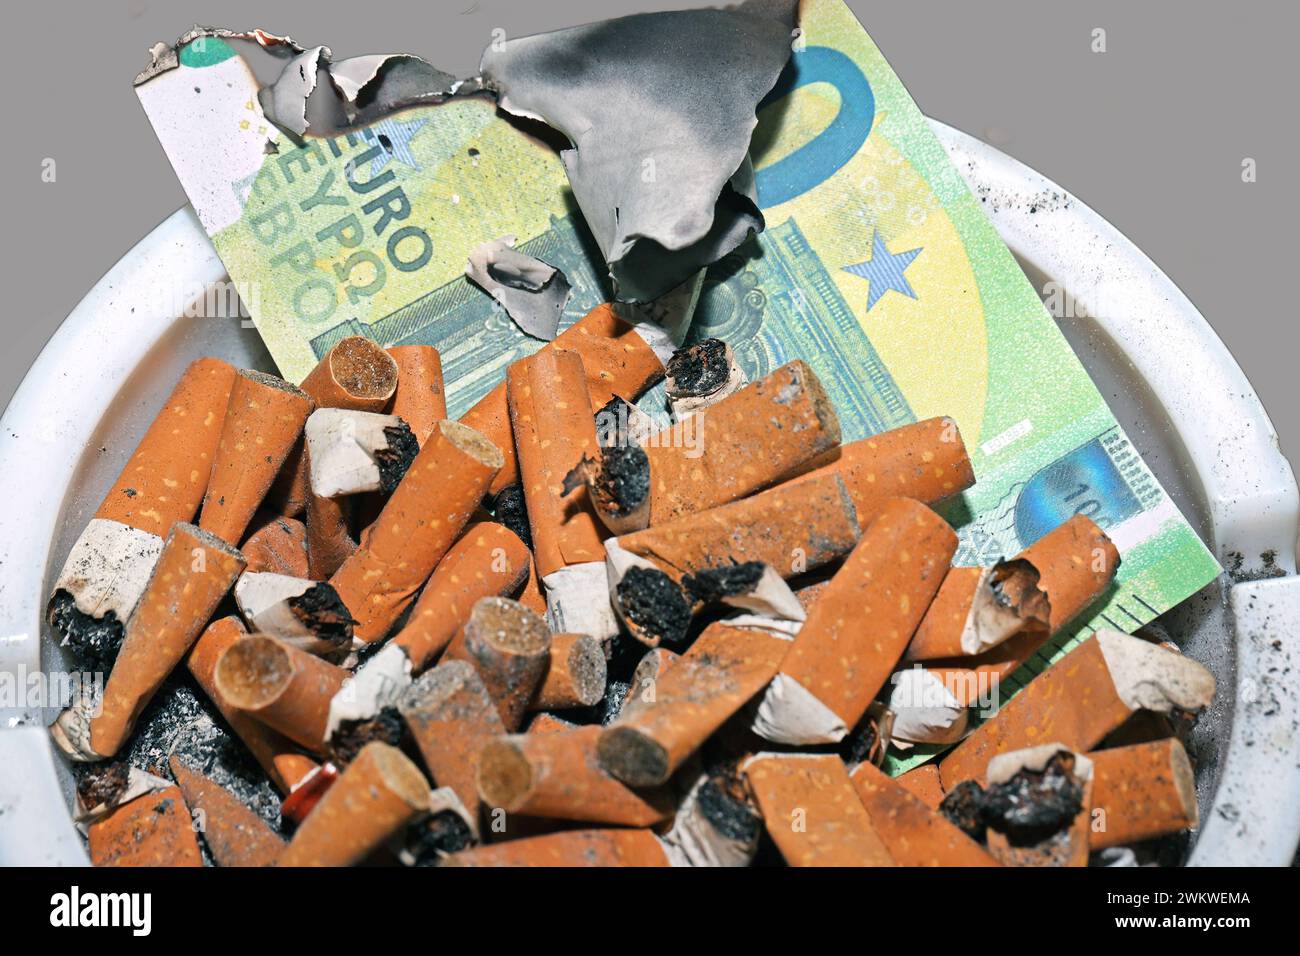 Gesundheit und Geld zu Asche verbrannt Zigarettenkippen in Großer Zahl und deren Asche *** santé et argent brûlés en cendres un grand nombre de mégots de cigarettes et leurs cendres Banque D'Images